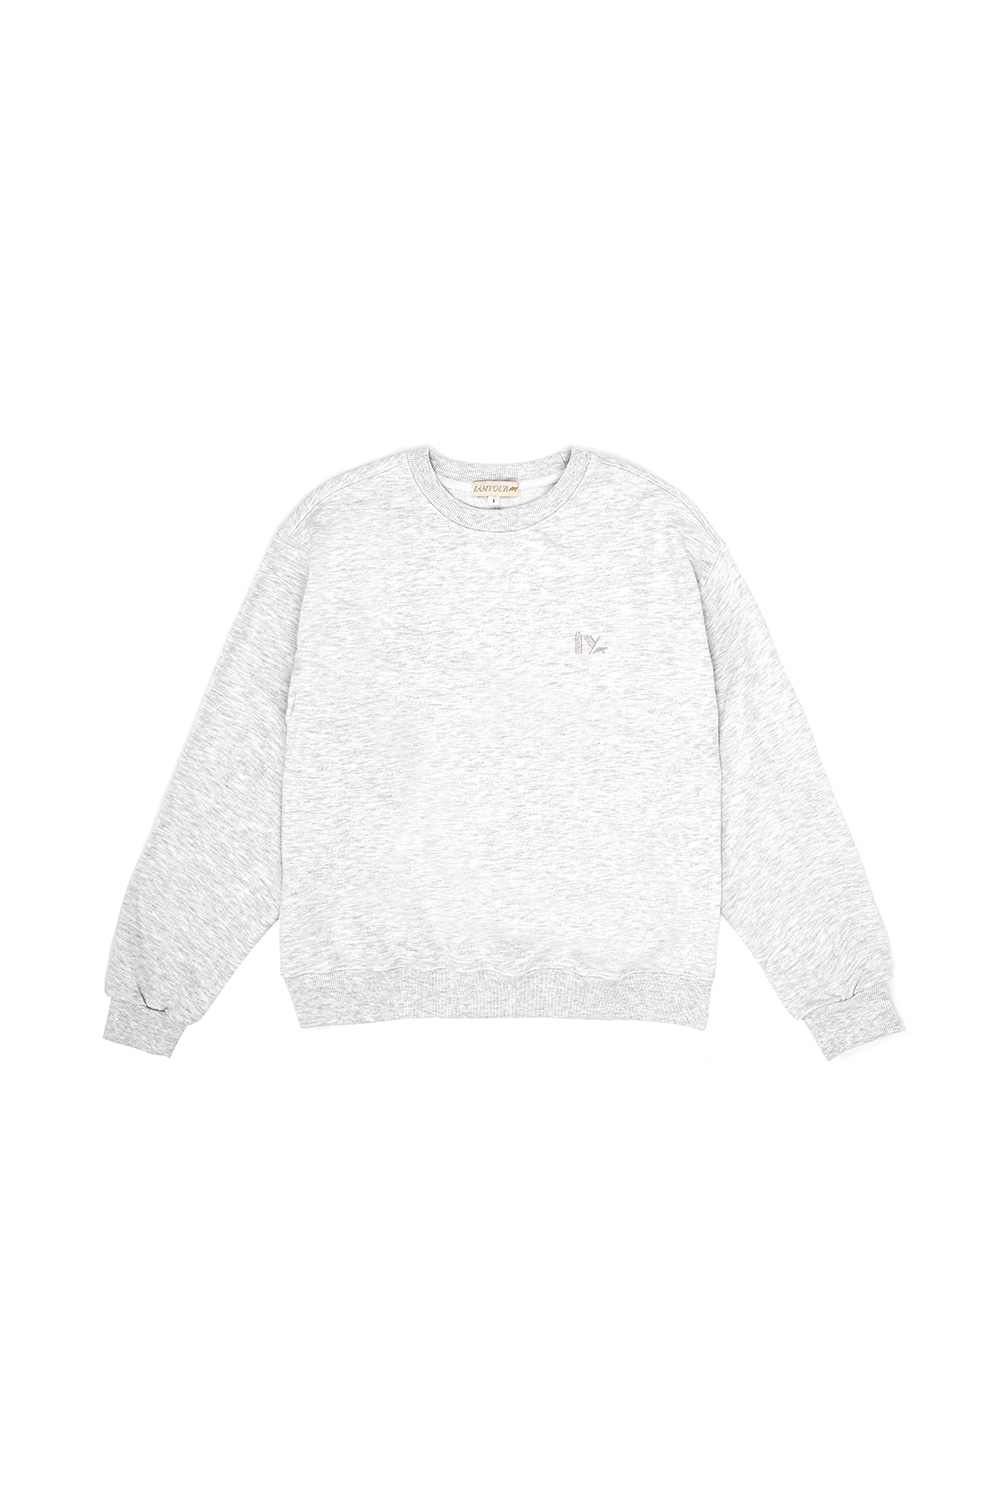 30%--Sweatshirt(light gray)